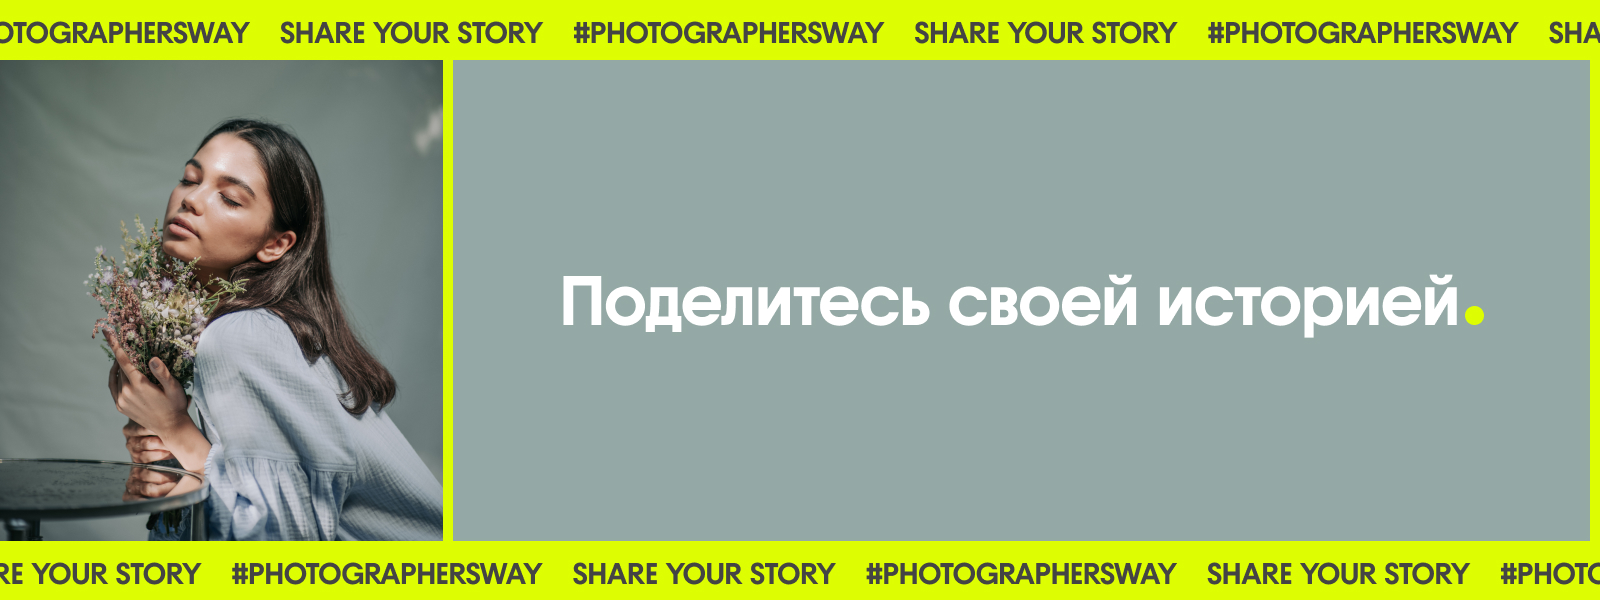 Станьте участником нового проекта для фотографов: поделитесь своей историей с Depositphotos